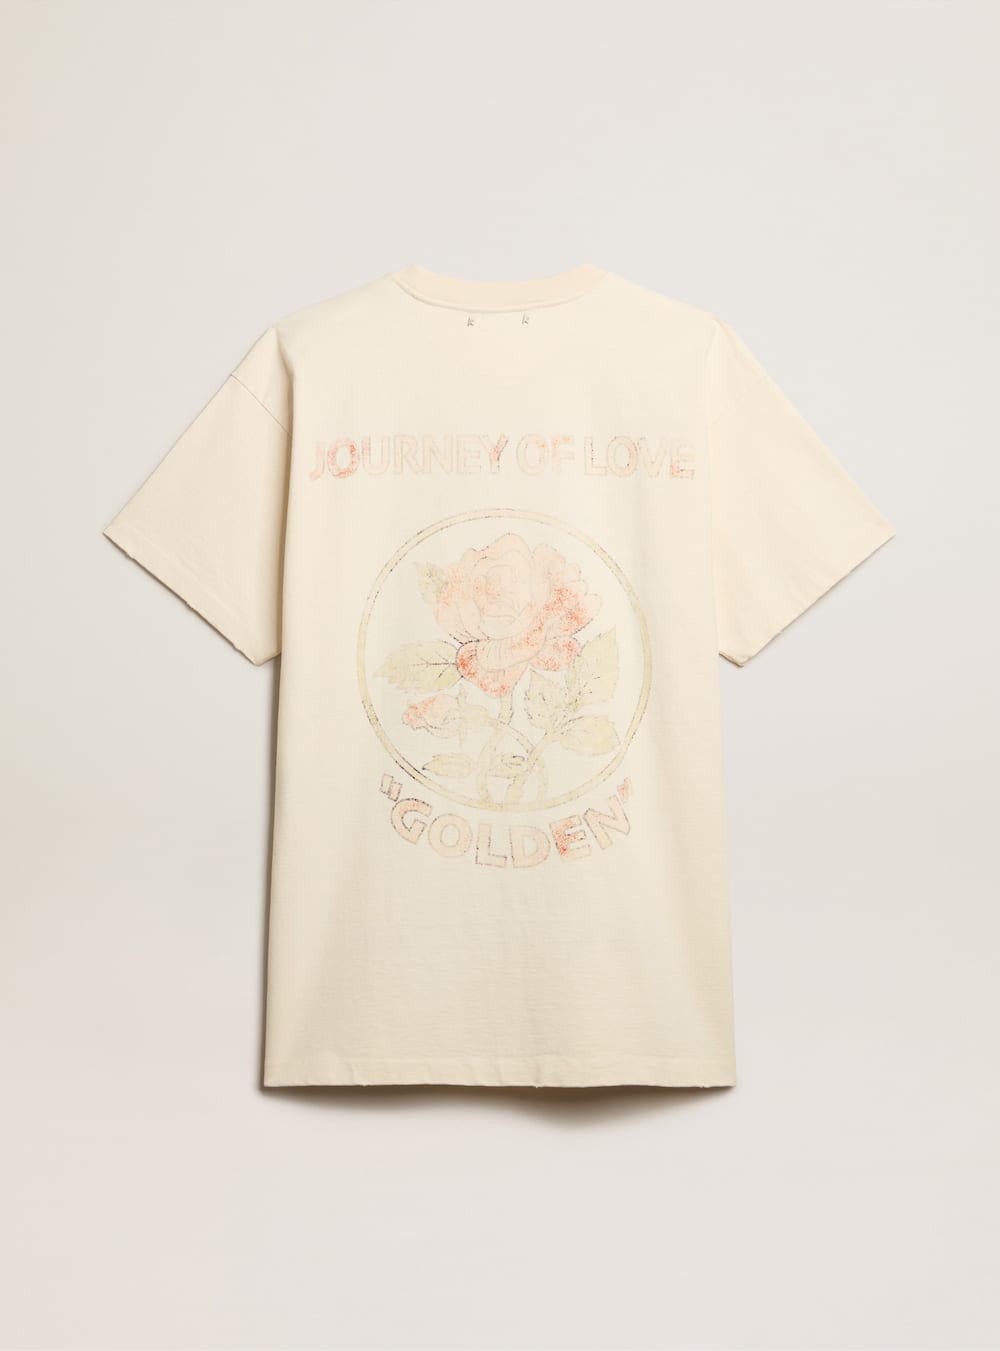 Golden Goose - Vestito t-shirt in cotone color bianco vissuto con disegno ricamato in 